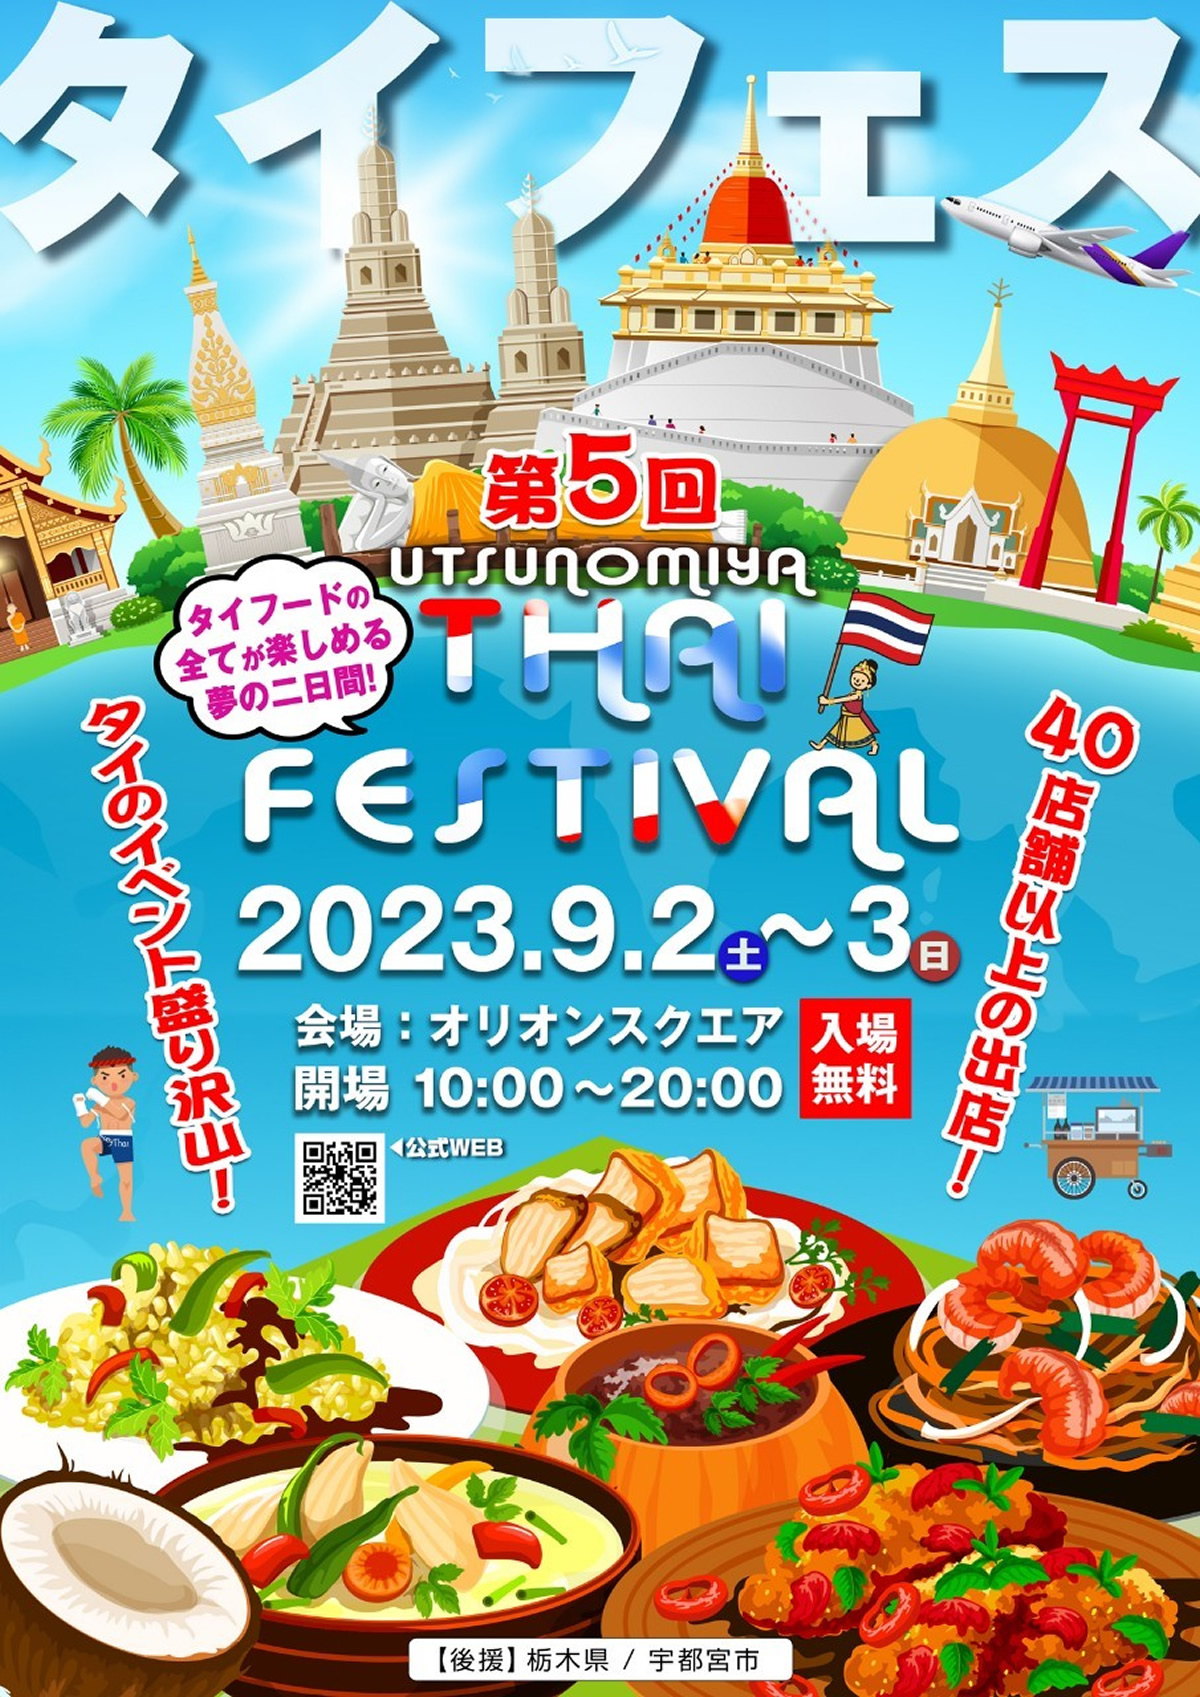 「第5回 宇都宮タイフェスティバル 2023」9月2日(土)・3日(日)開催